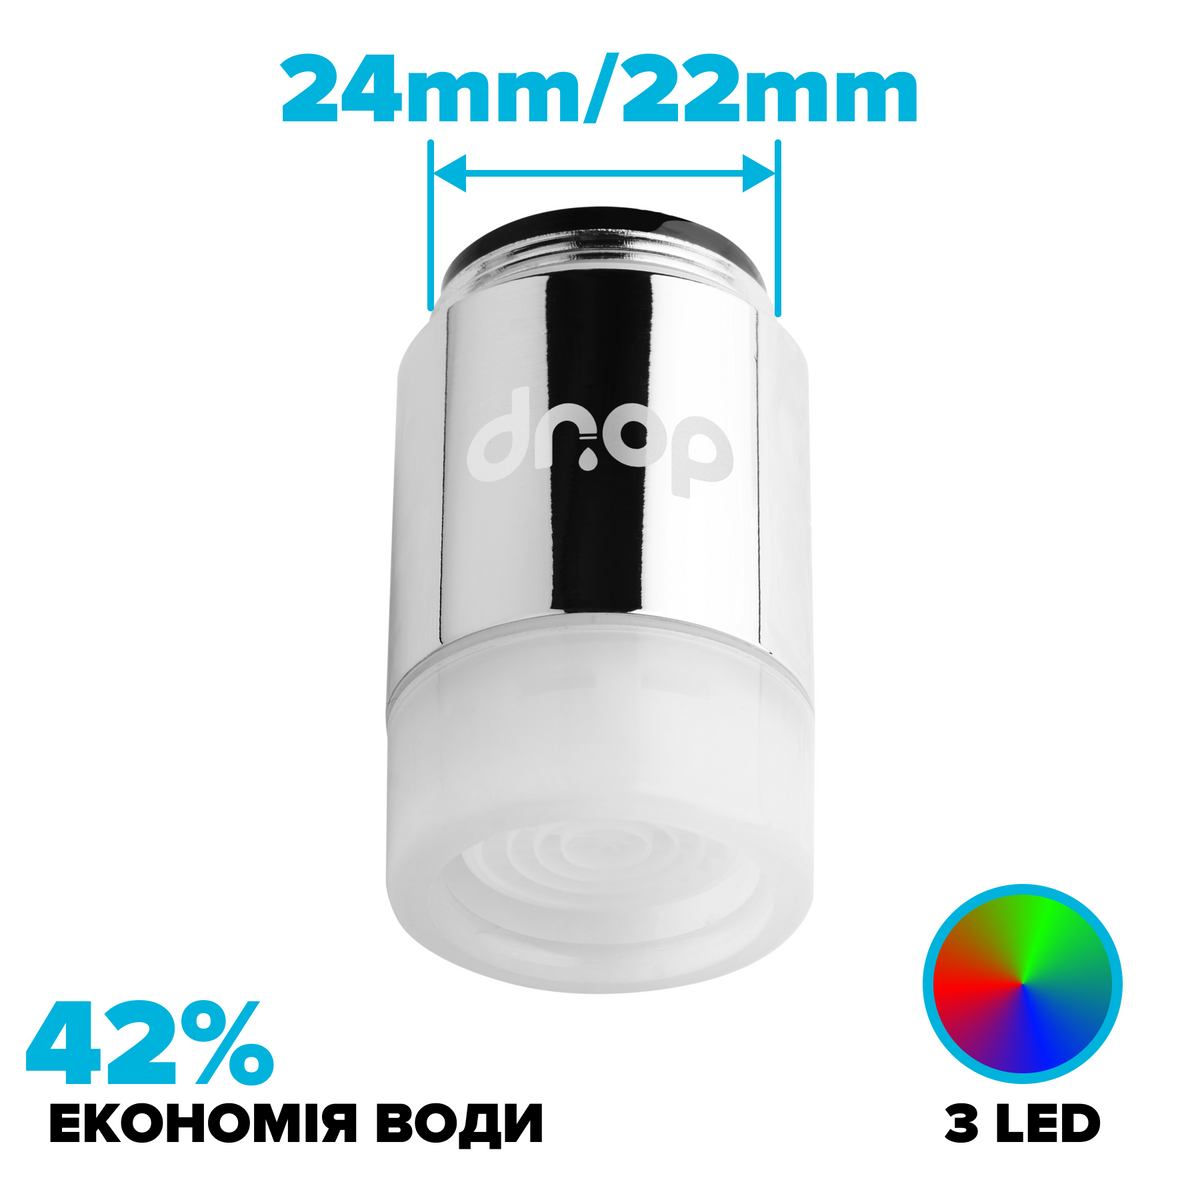 Водосберегающий LED аэратор c подсветкой DROP LED3M-22/24 в кран 3 COLOR, расход 7л/мин, 22/24мм